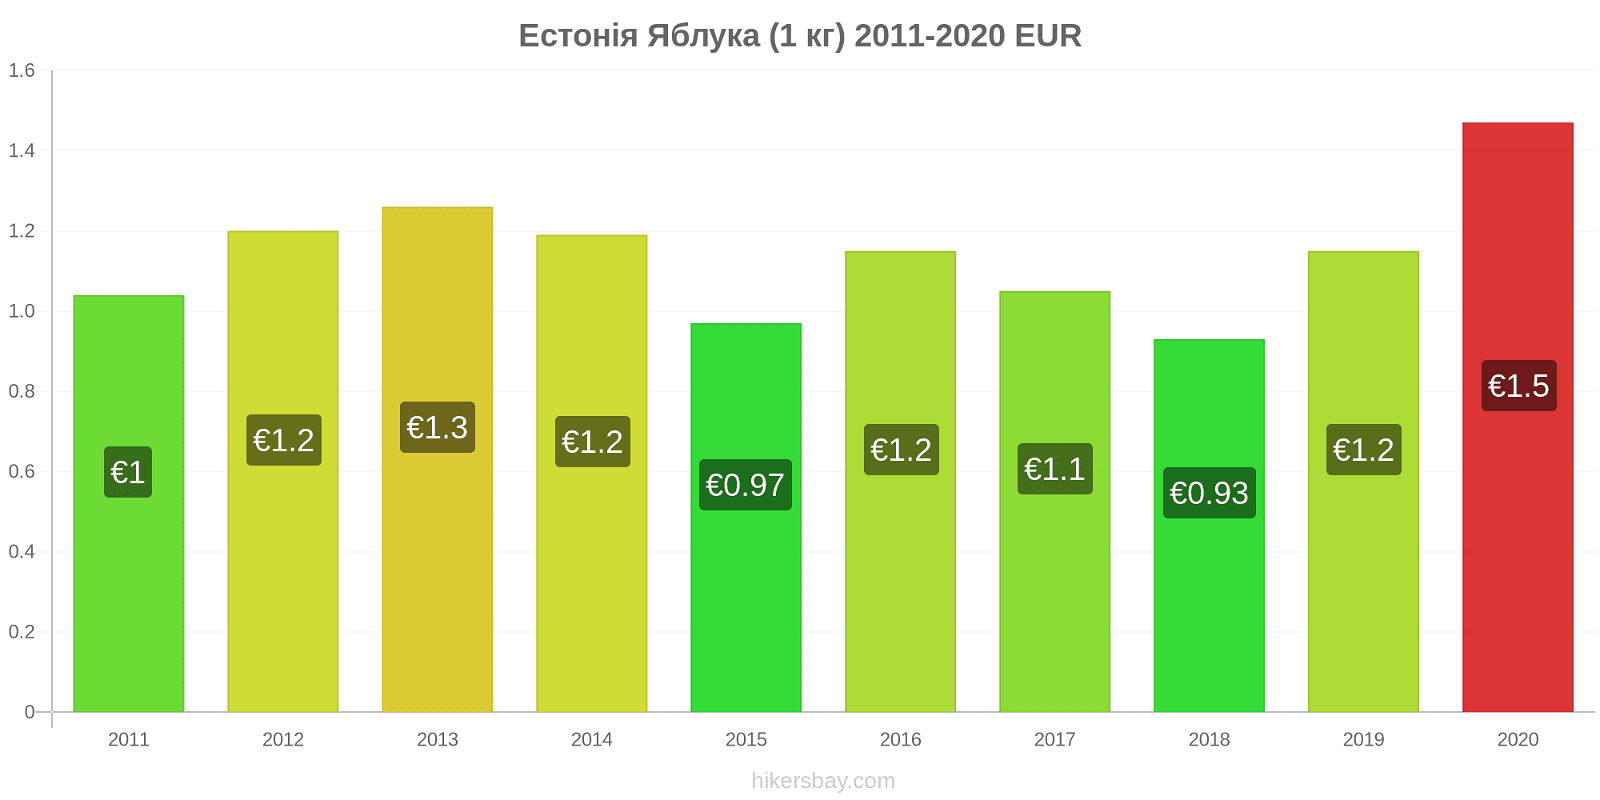 Естонія зміни цін Яблука (1 кг) hikersbay.com